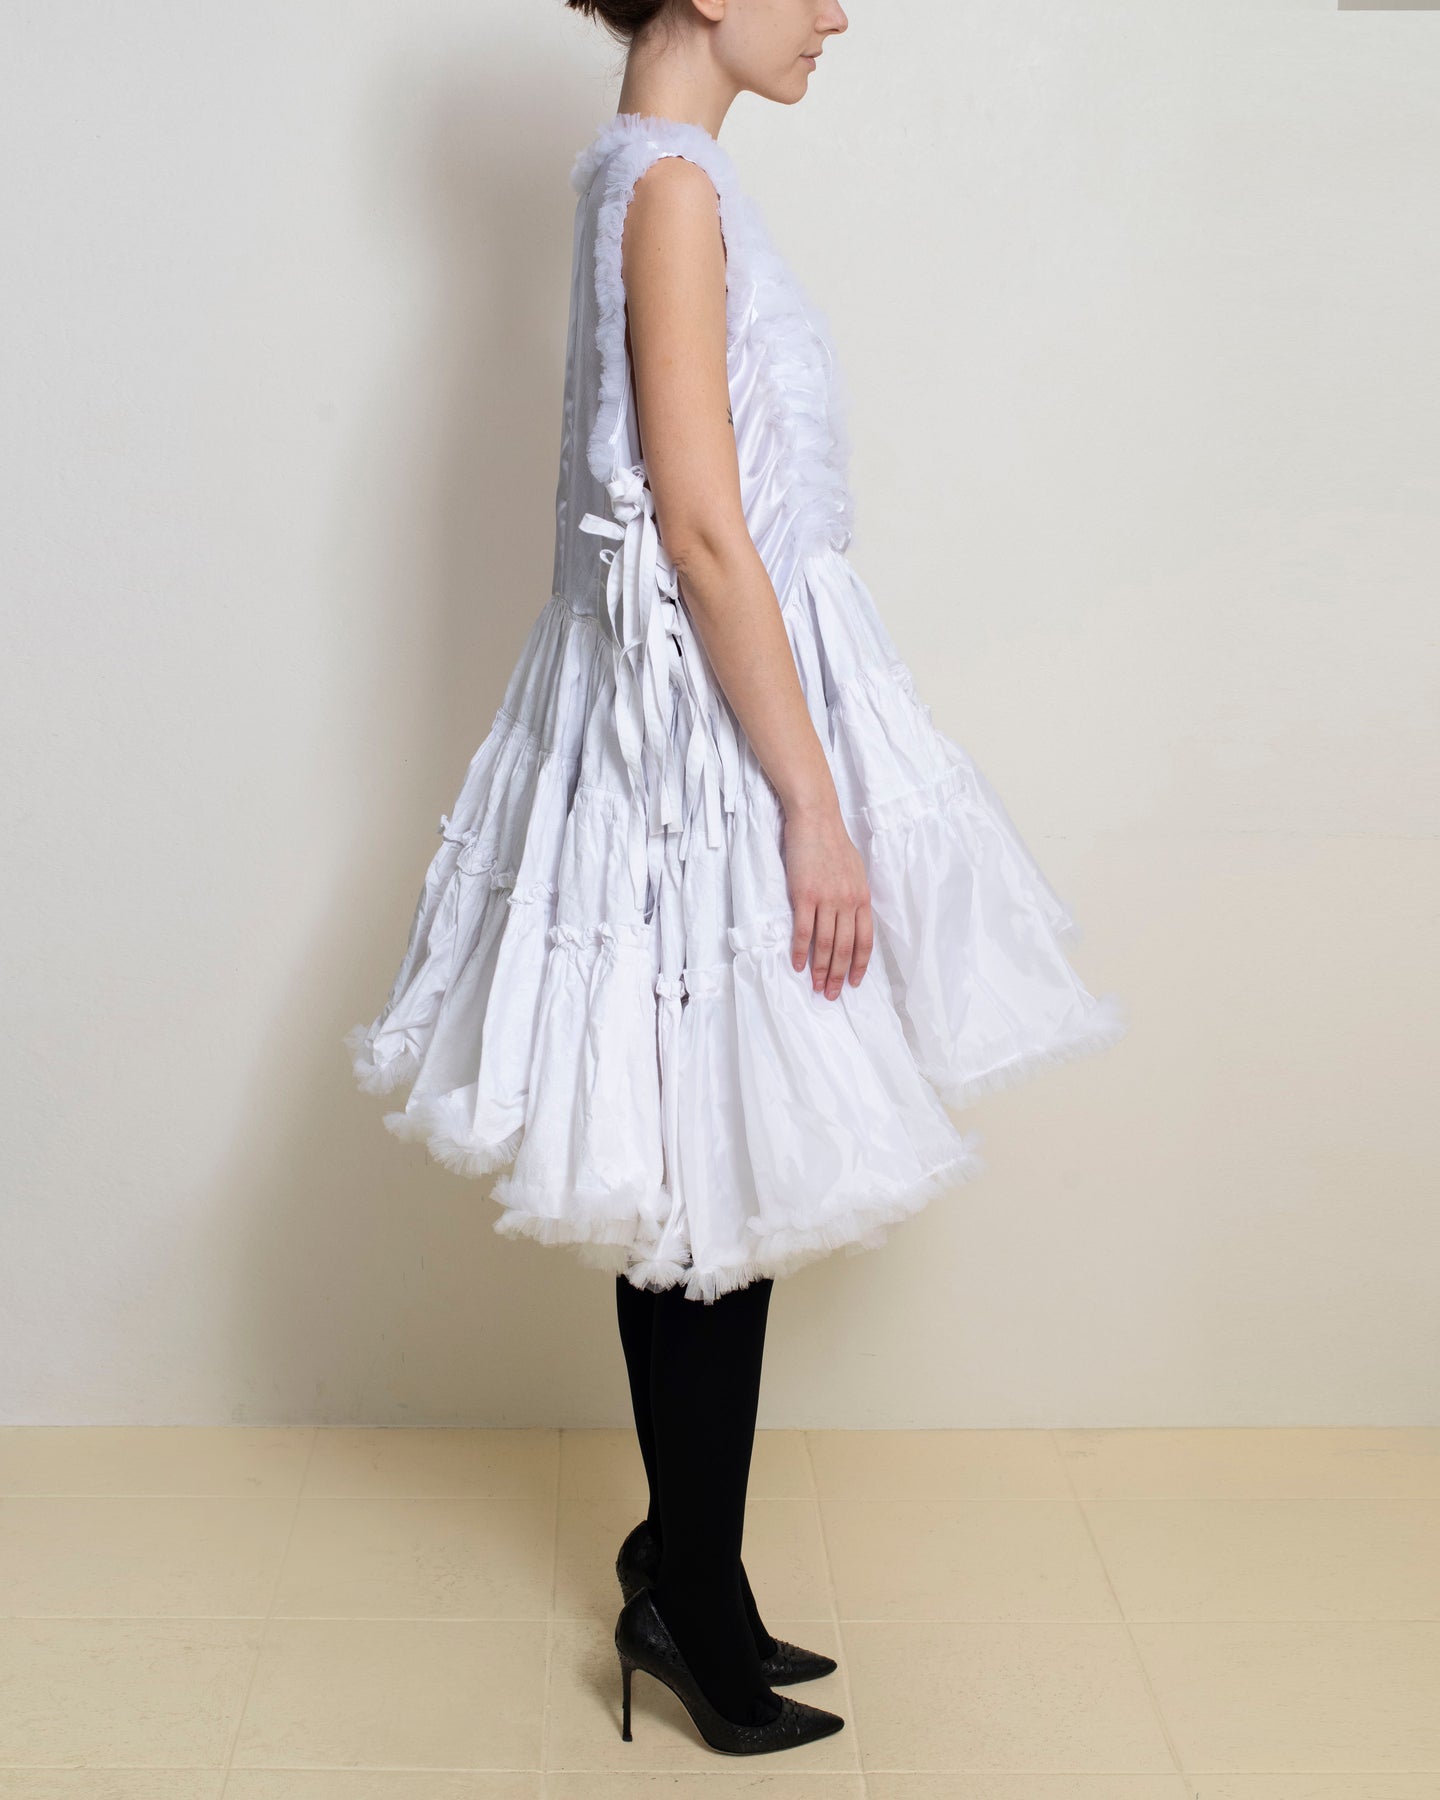 Meg Beck - White Tiered Dress